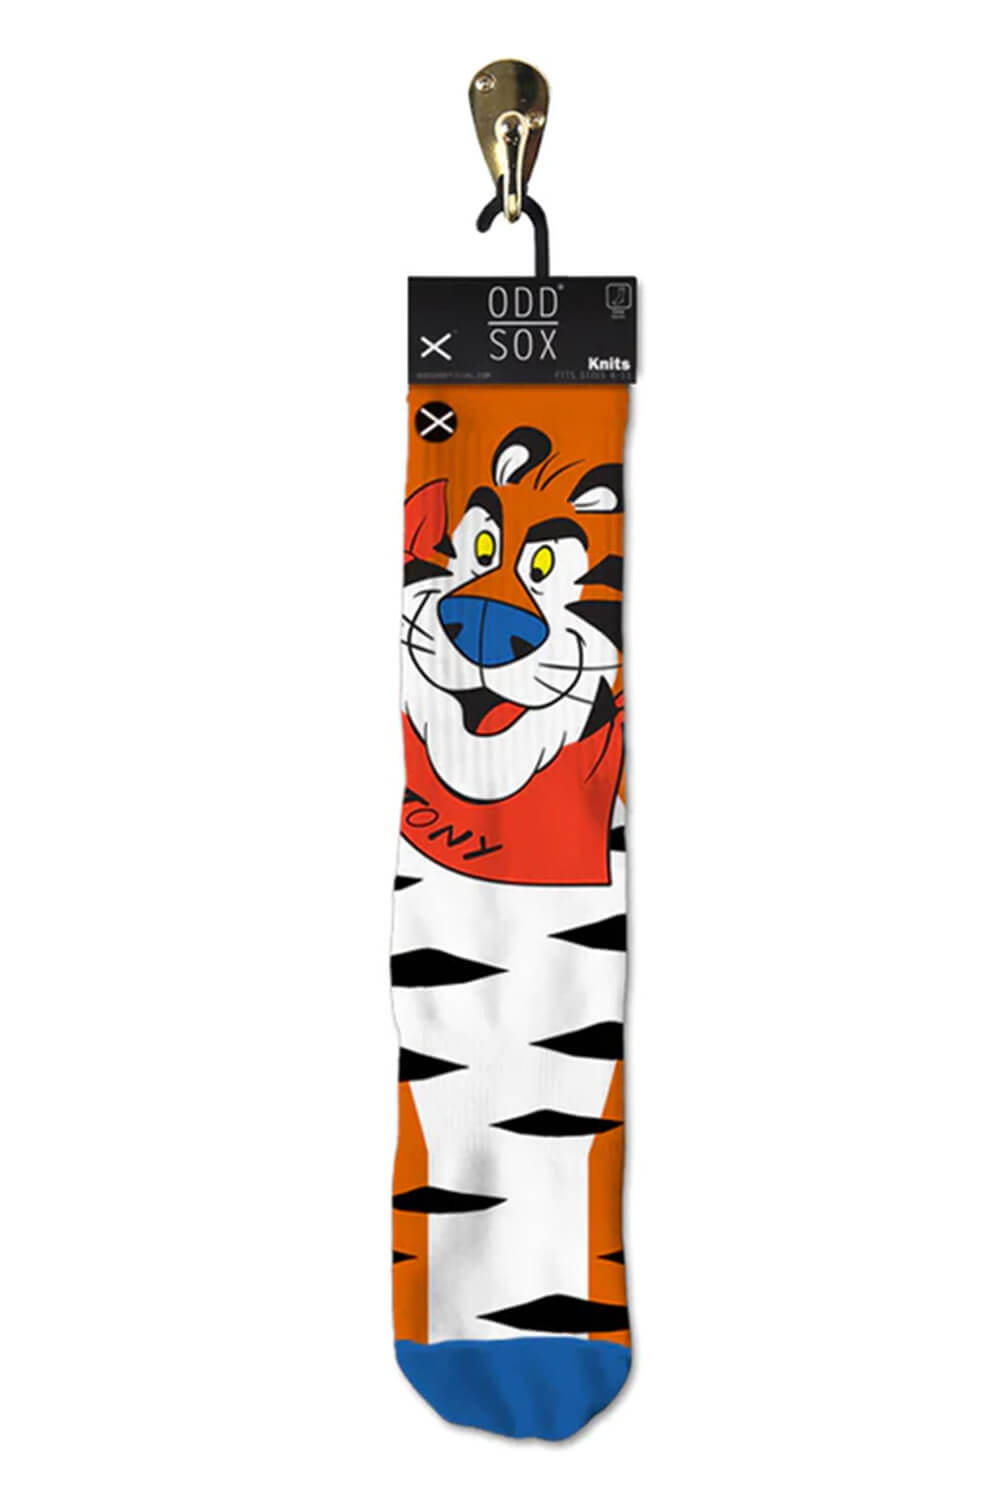 Odd Sox Tony the Tiger Crew Socks for Men in Orange